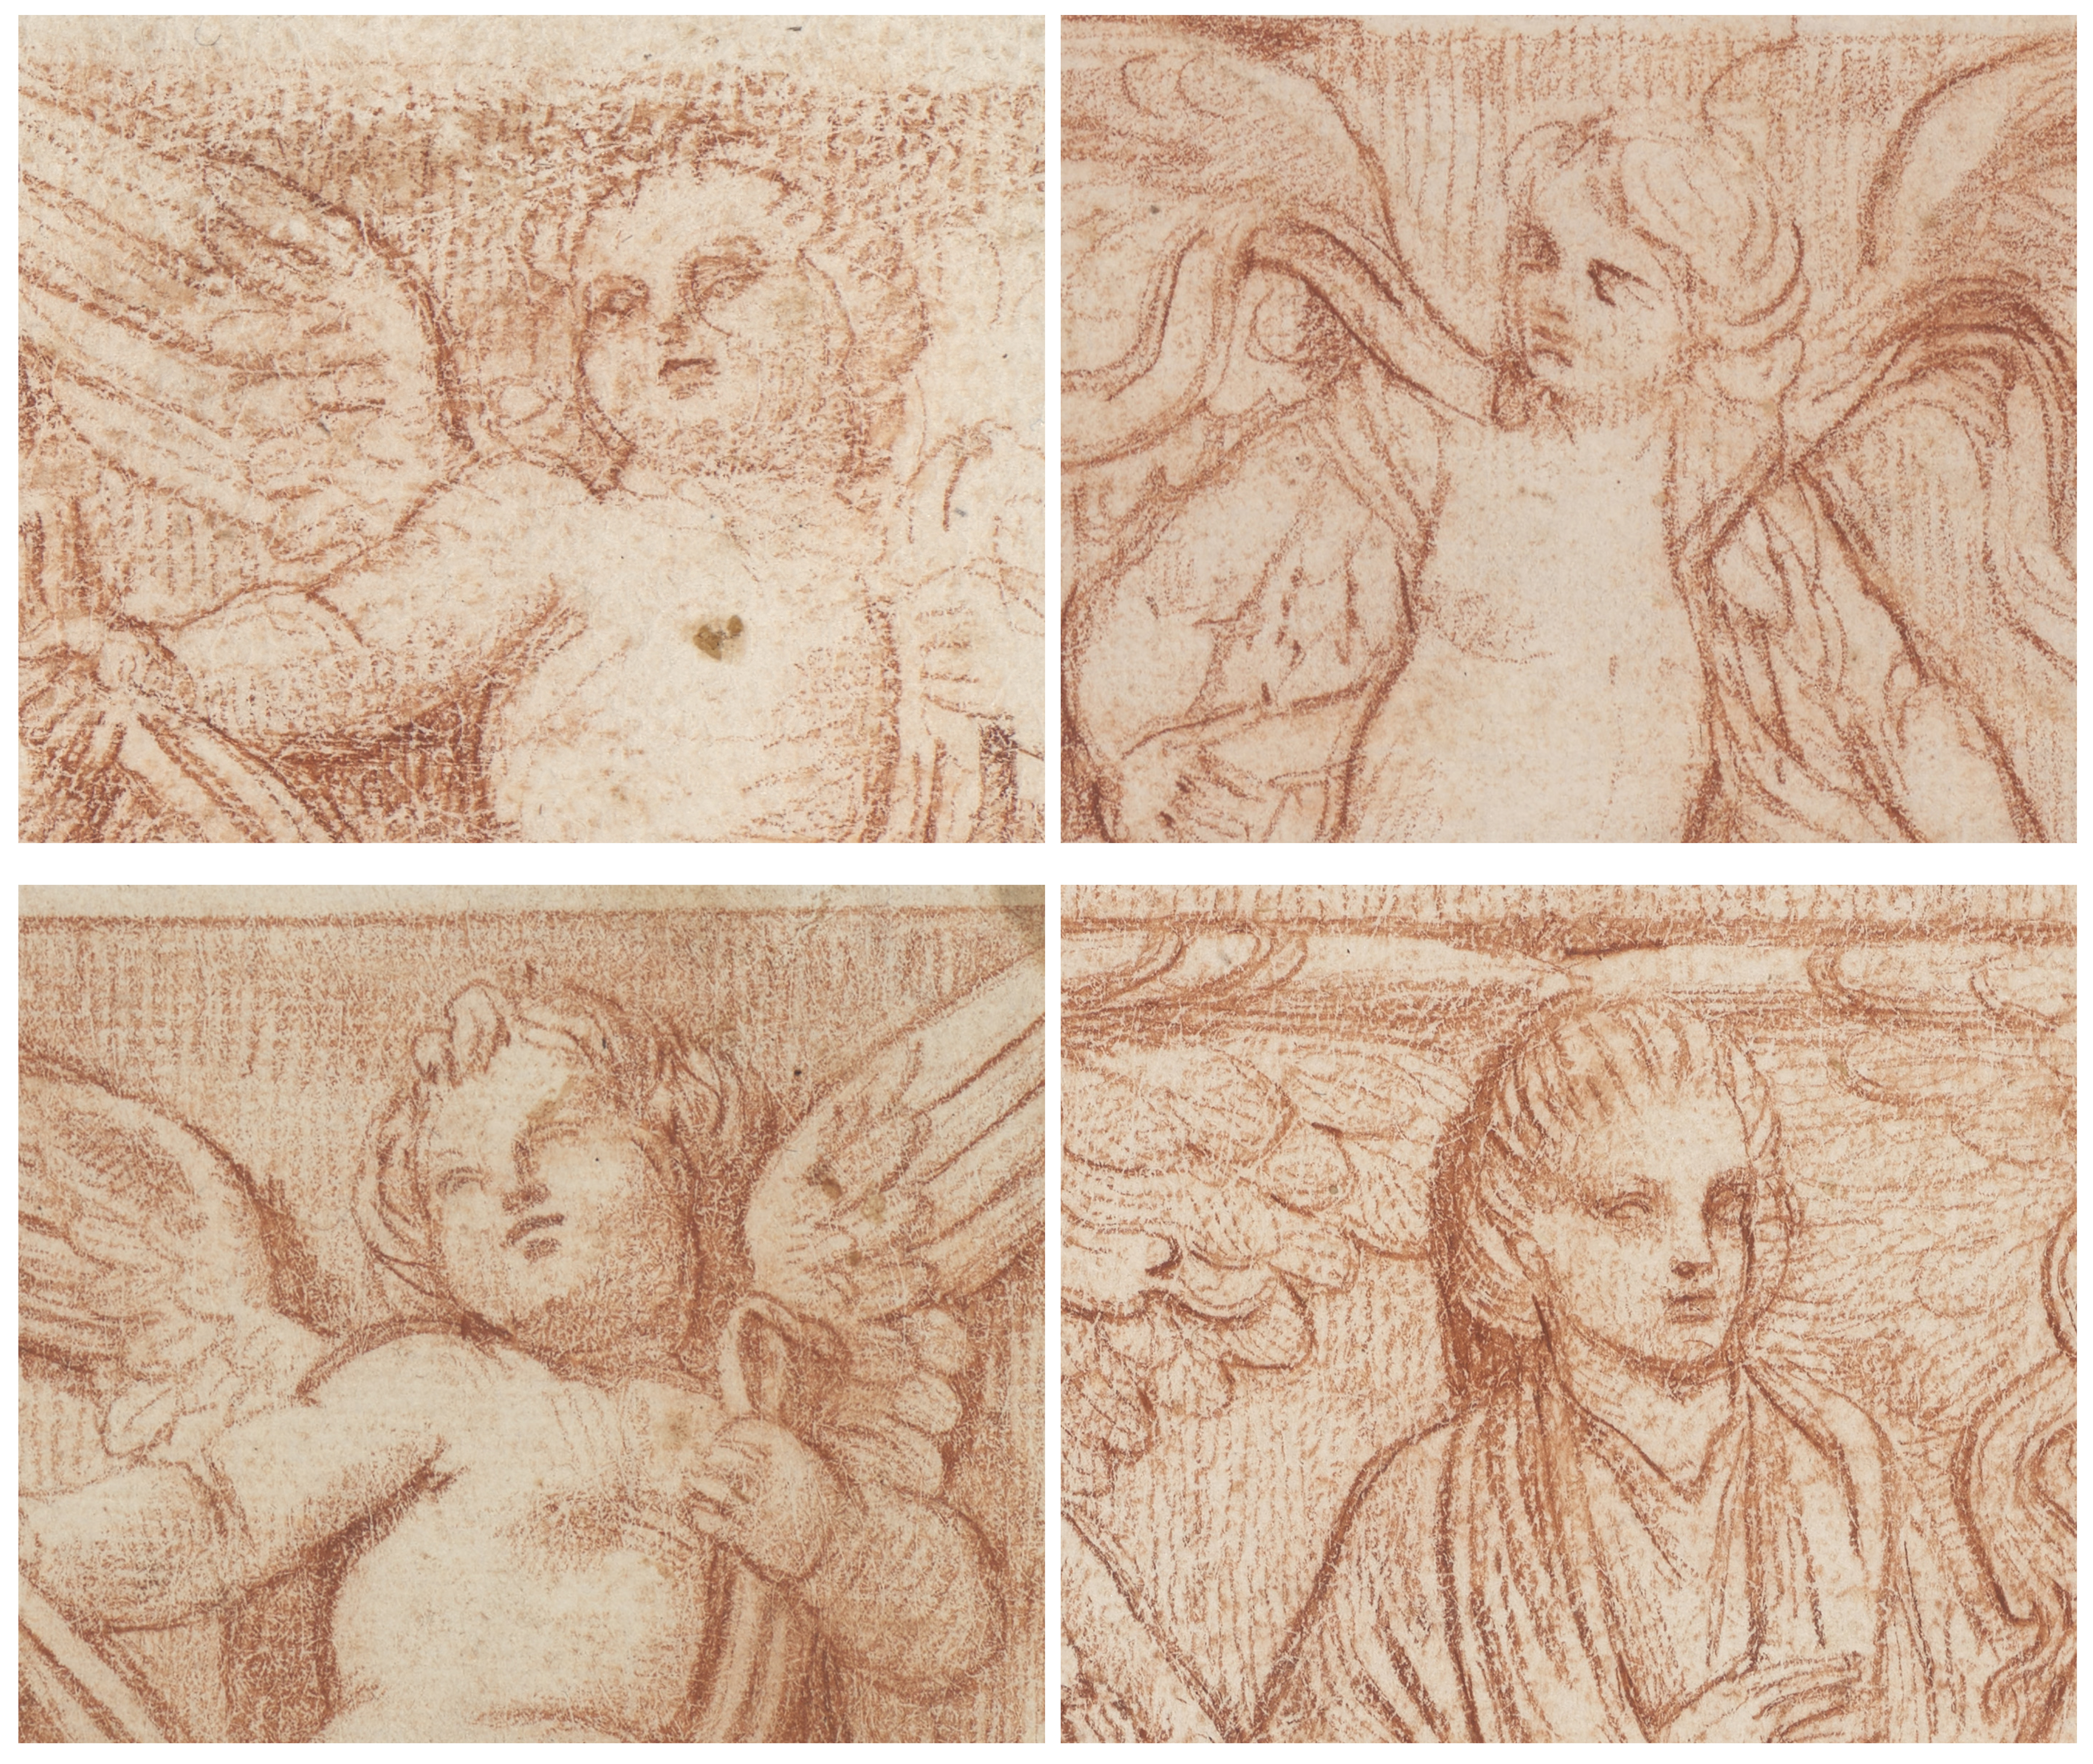 Vier verschiedene Piranesi-Zeichnungen mit Gesichtern zum Vergleich. 